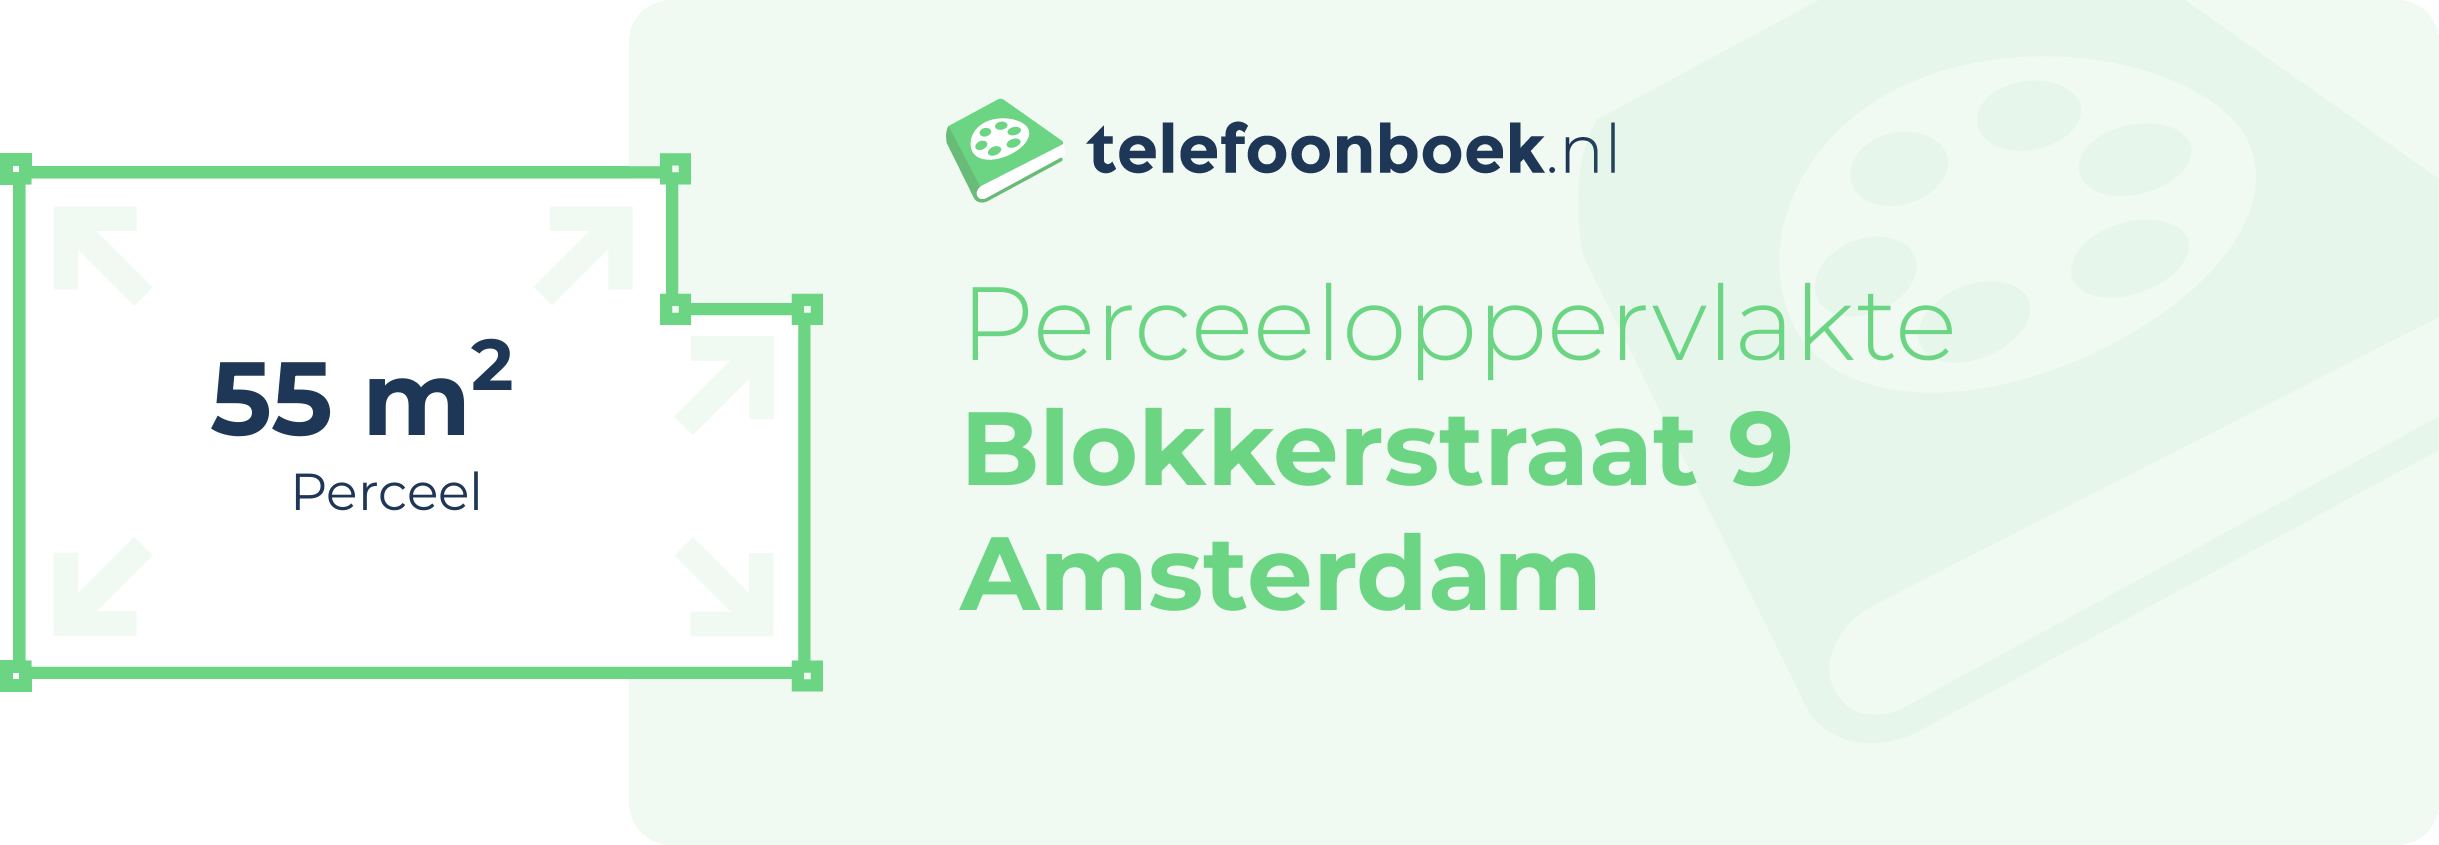 Perceeloppervlakte Blokkerstraat 9 Amsterdam